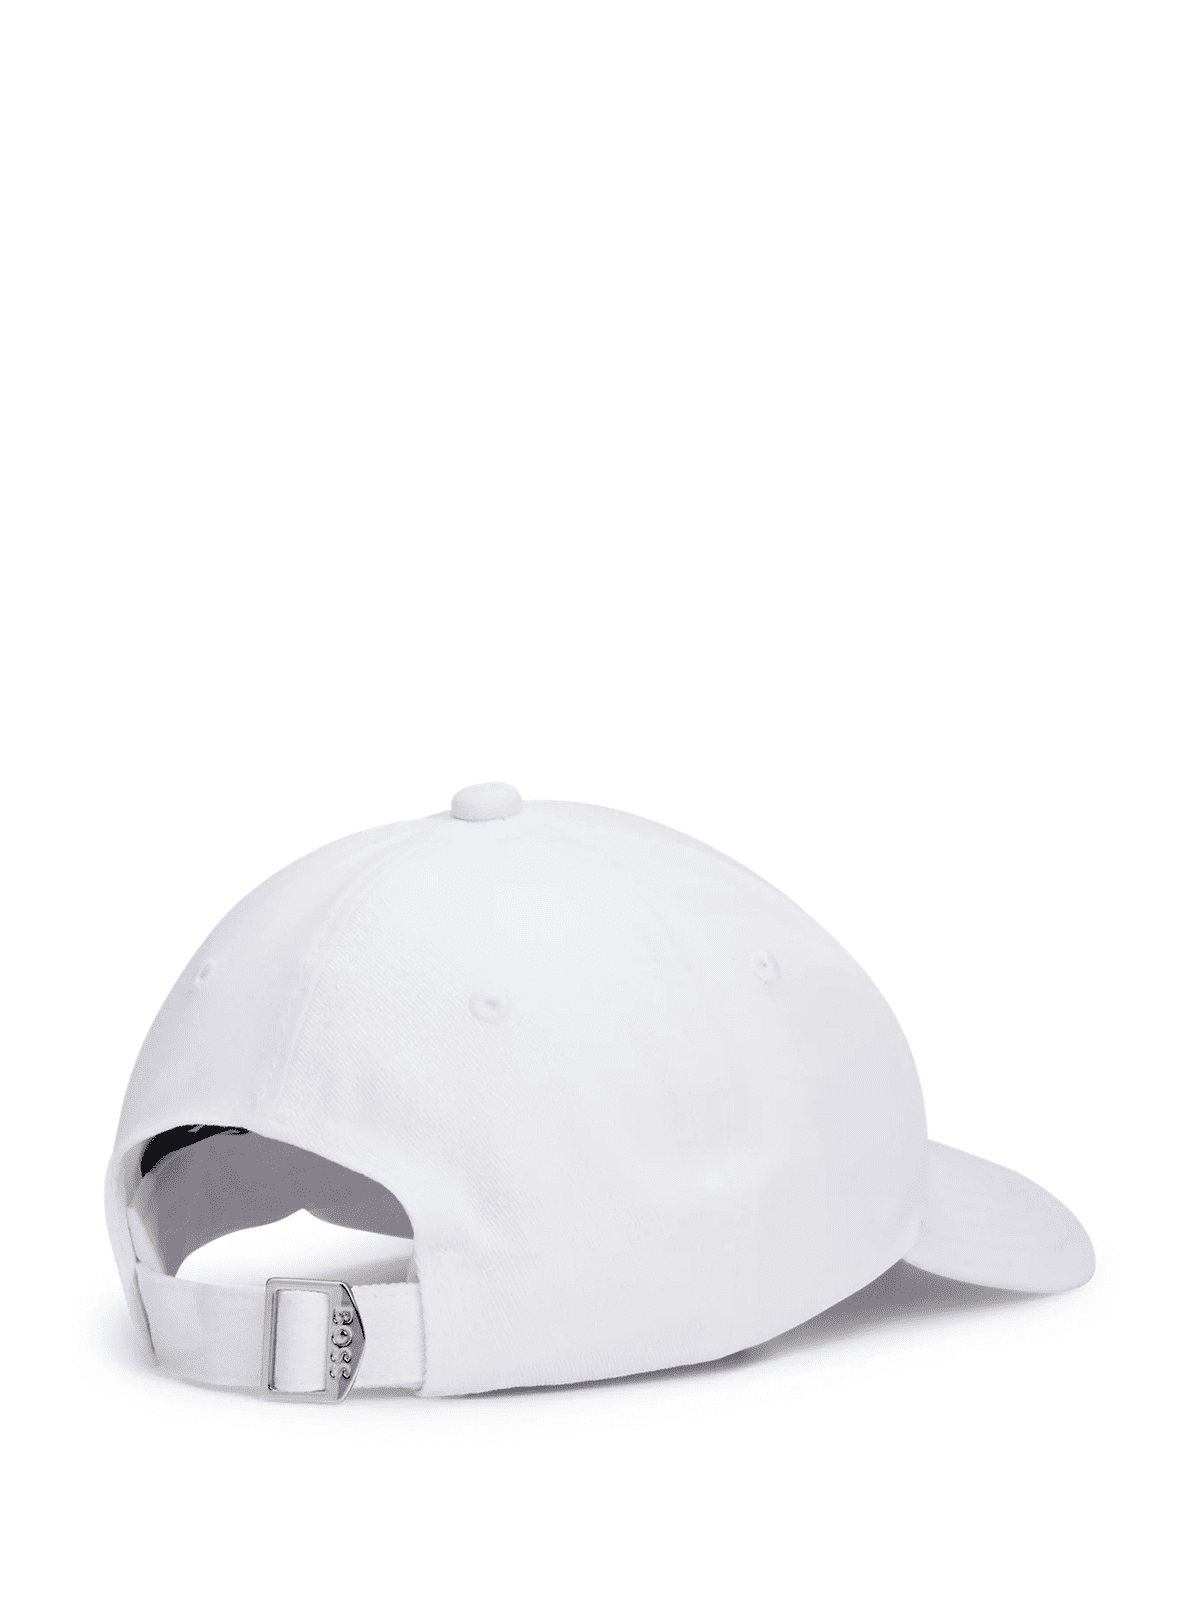 ZED - White cap onesize